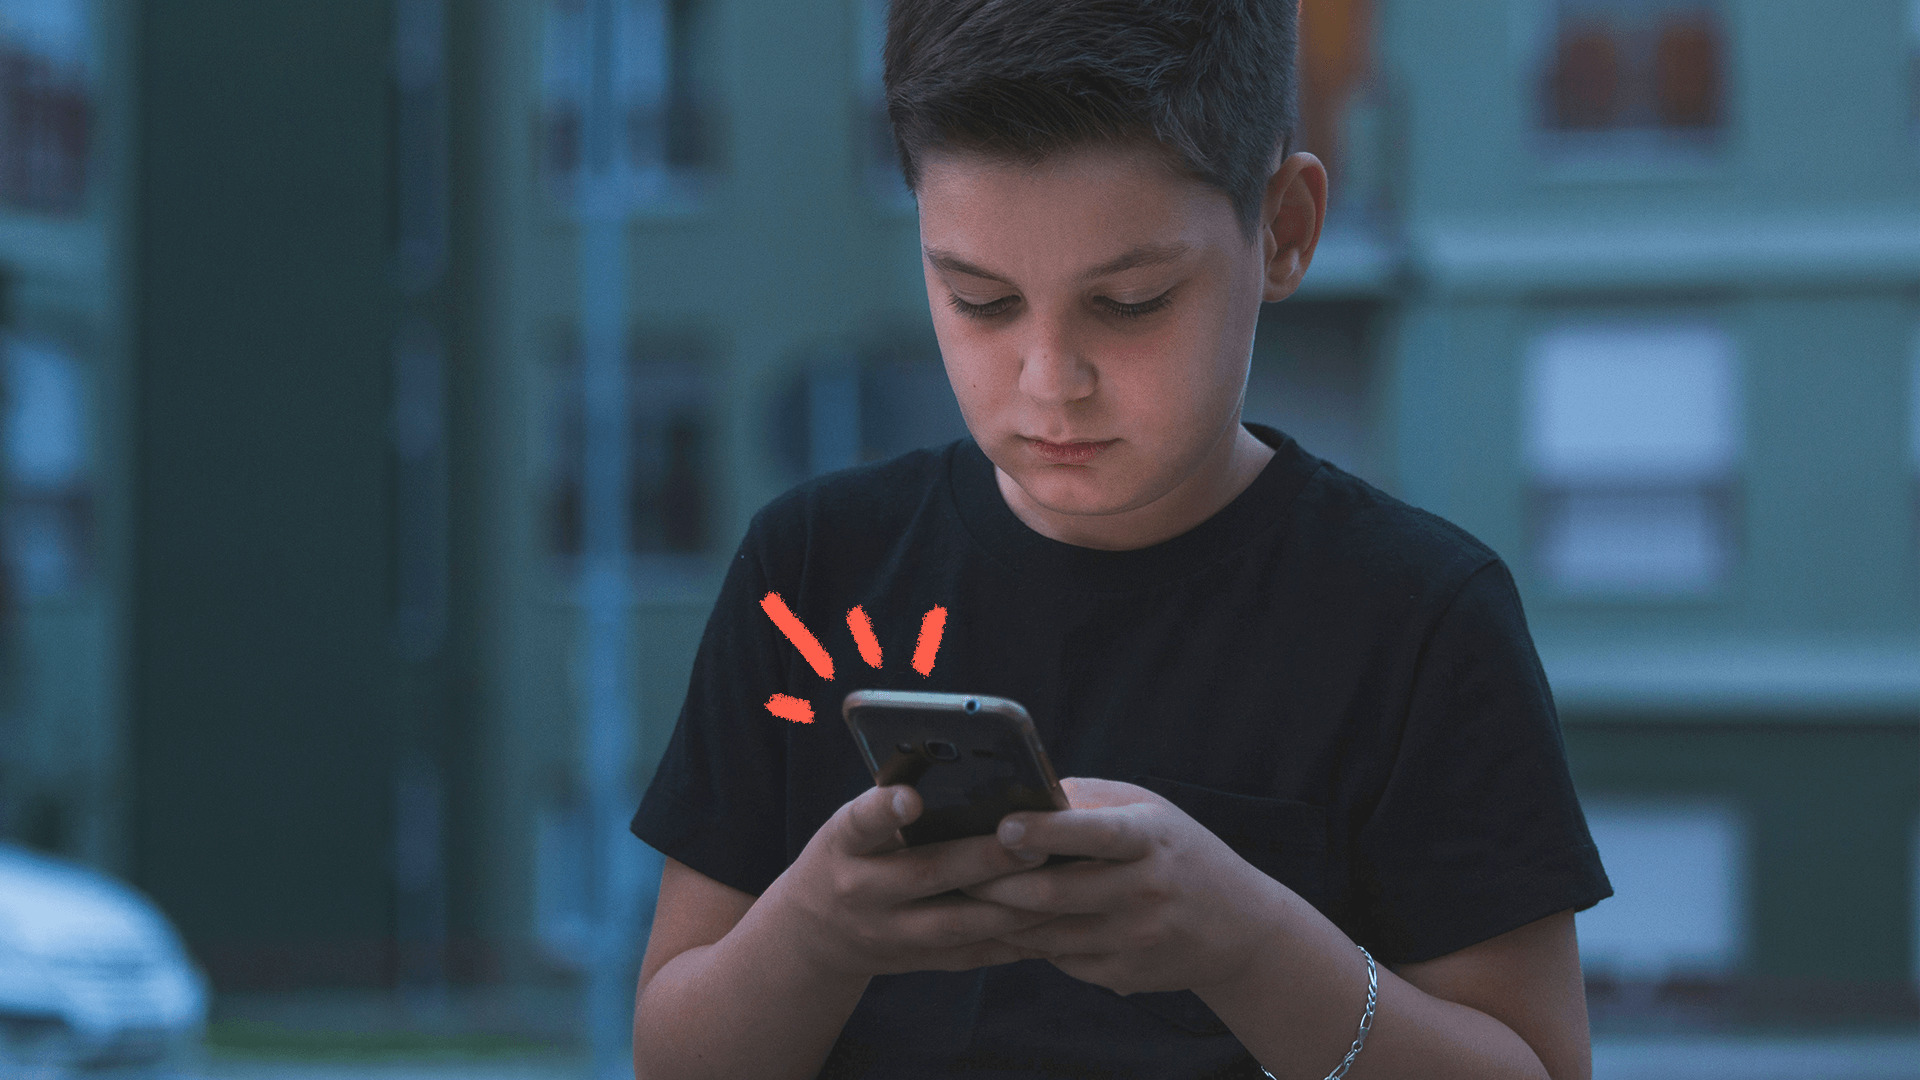 imagem para matéria sobre apostas on-line e crianças motra um menino branco usando camisa preta e um smartphone